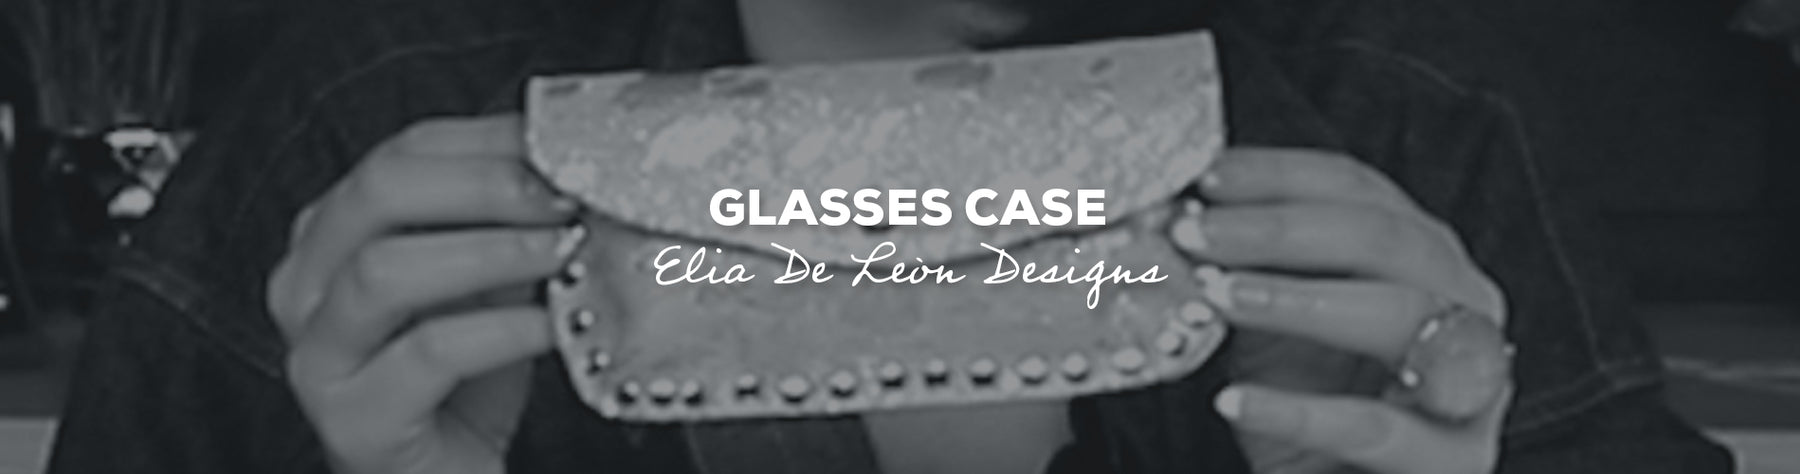 Gift Idea: Glasses Case with Elia De Leòn